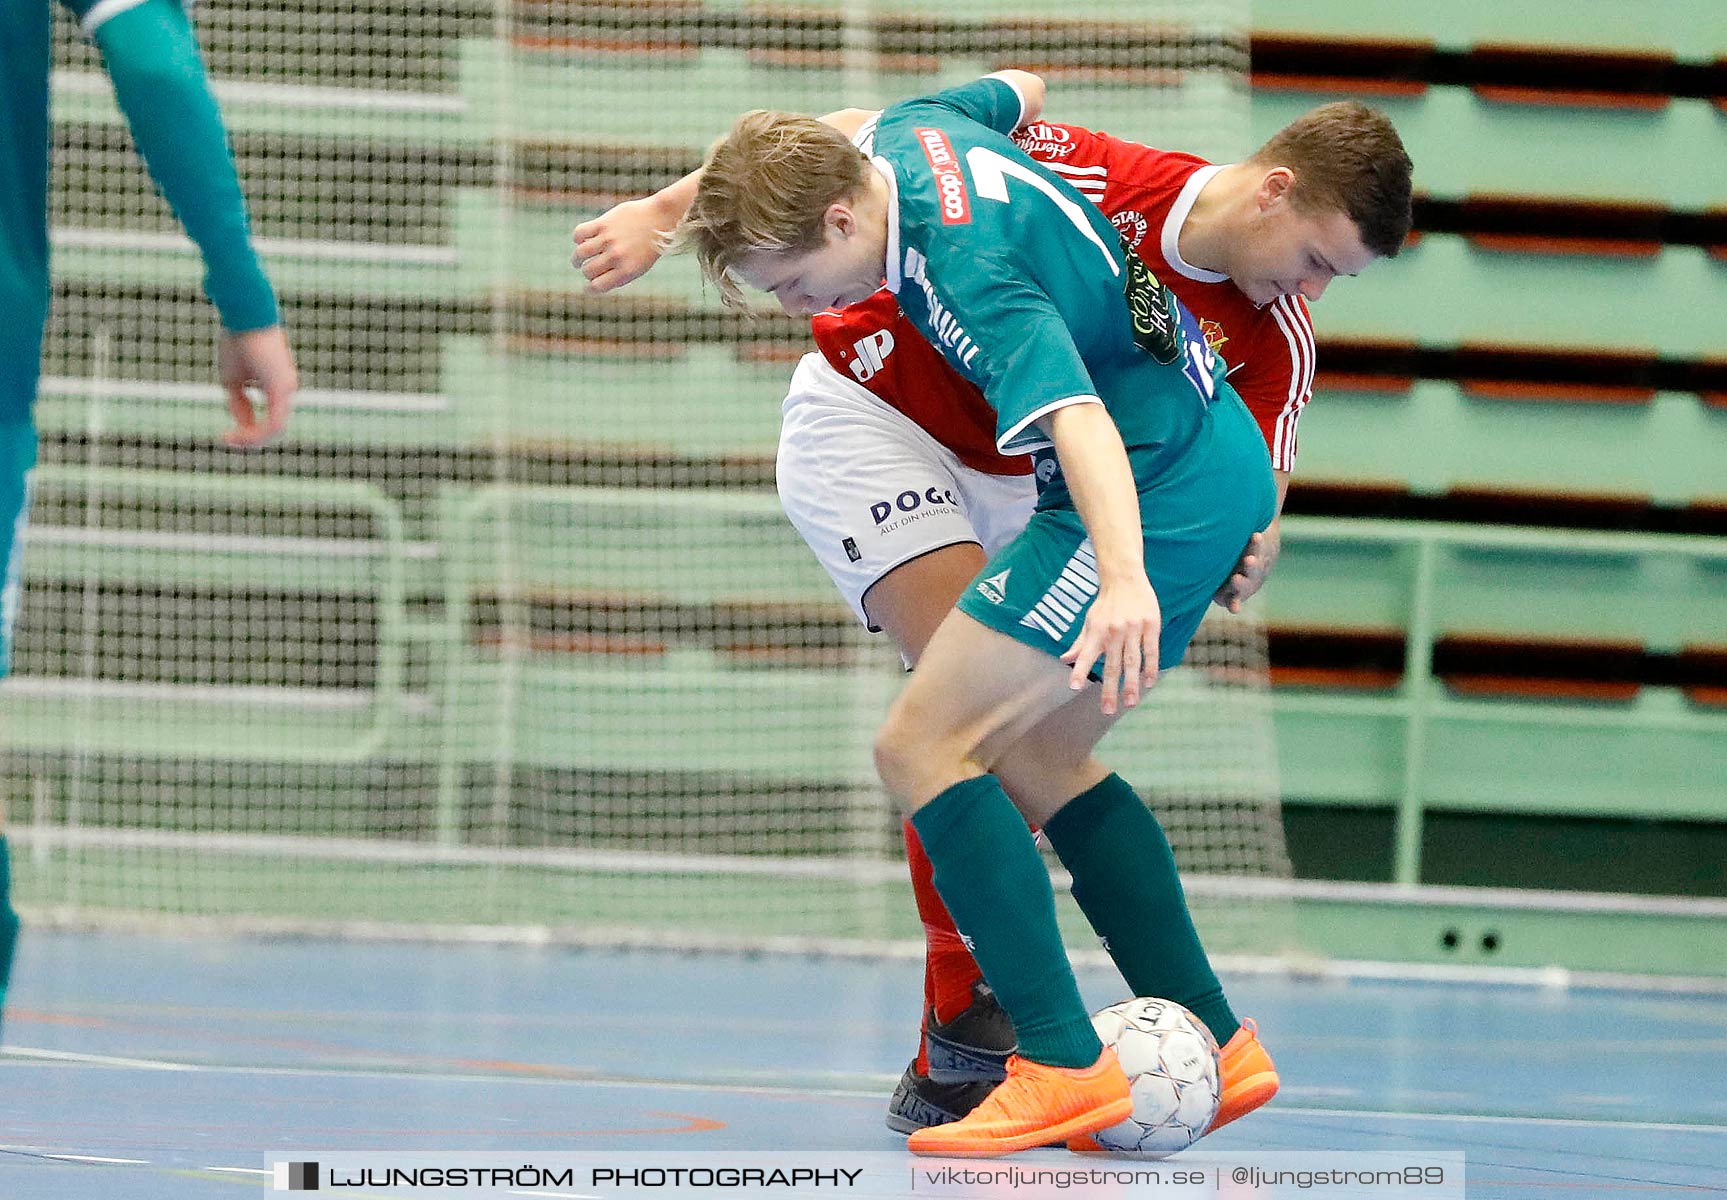 Skövde Futsalcup 2019 Herrar Vårgårda IK-Våmbs IF,herr,Arena Skövde,Skövde,Sverige,Futsal,,2019,227287